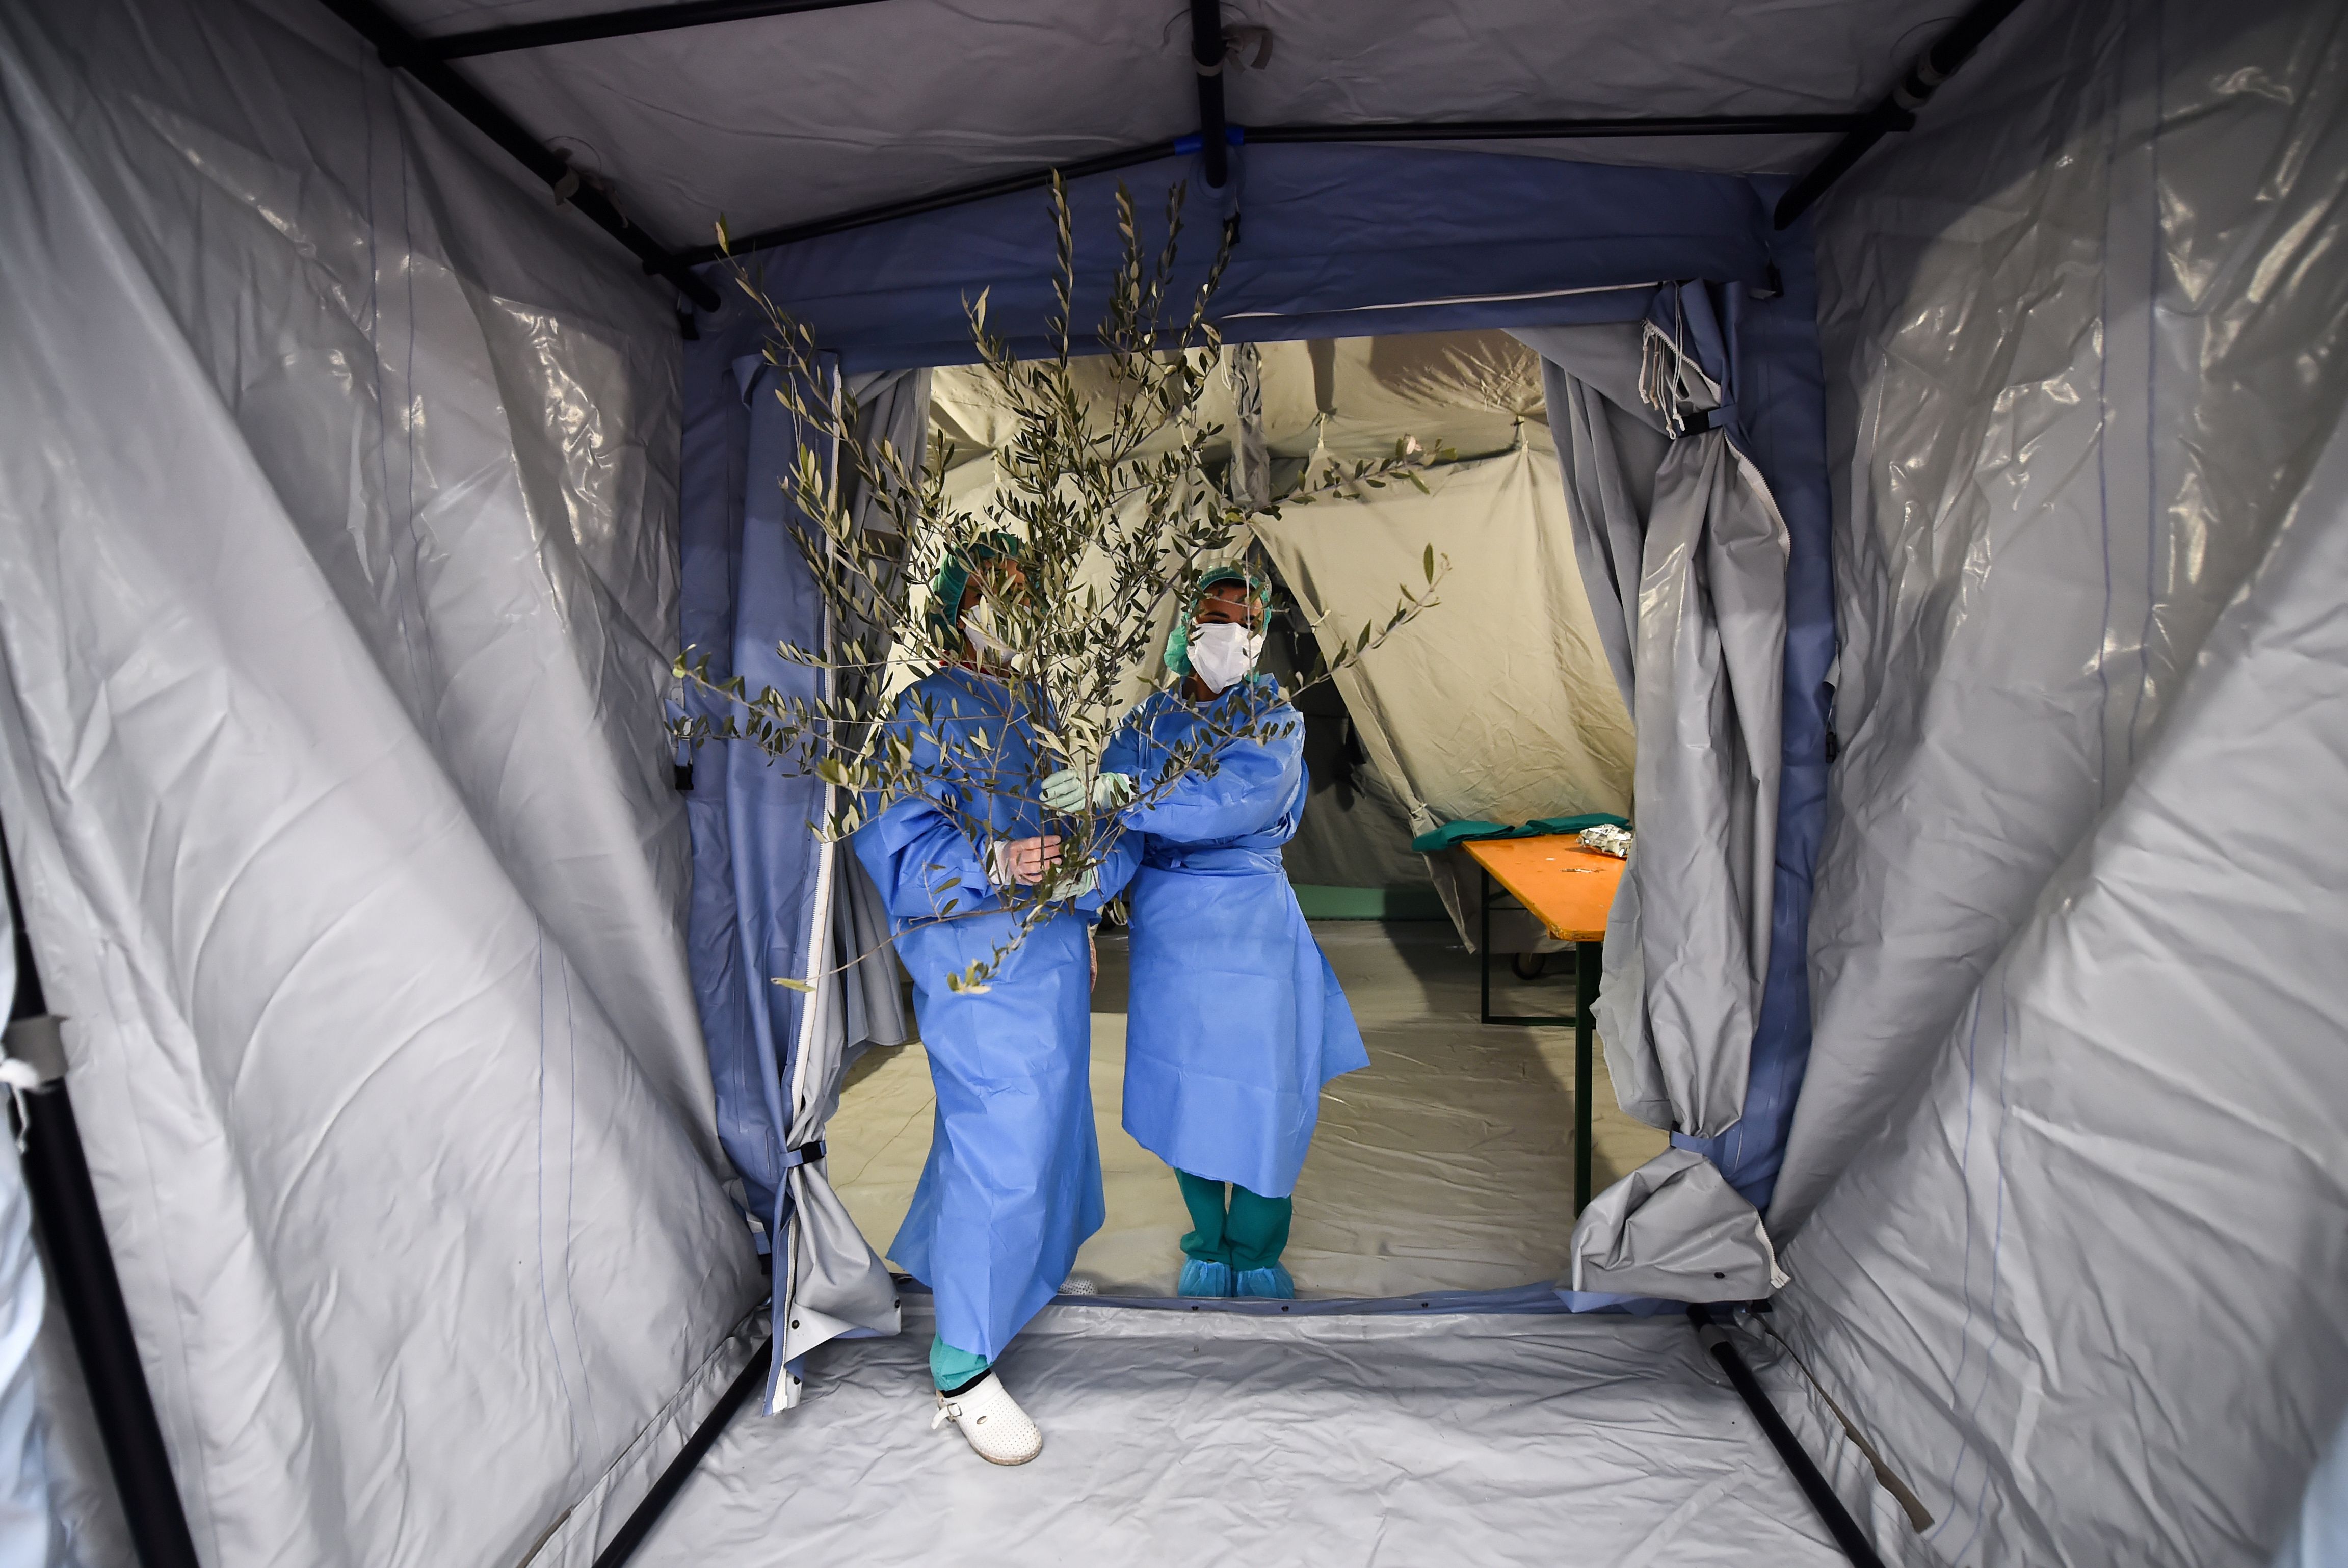 Miembros del personal médico en el hospital Molinette en el domingo de ramos en Turín (REUTERS/Massimo Pinca)